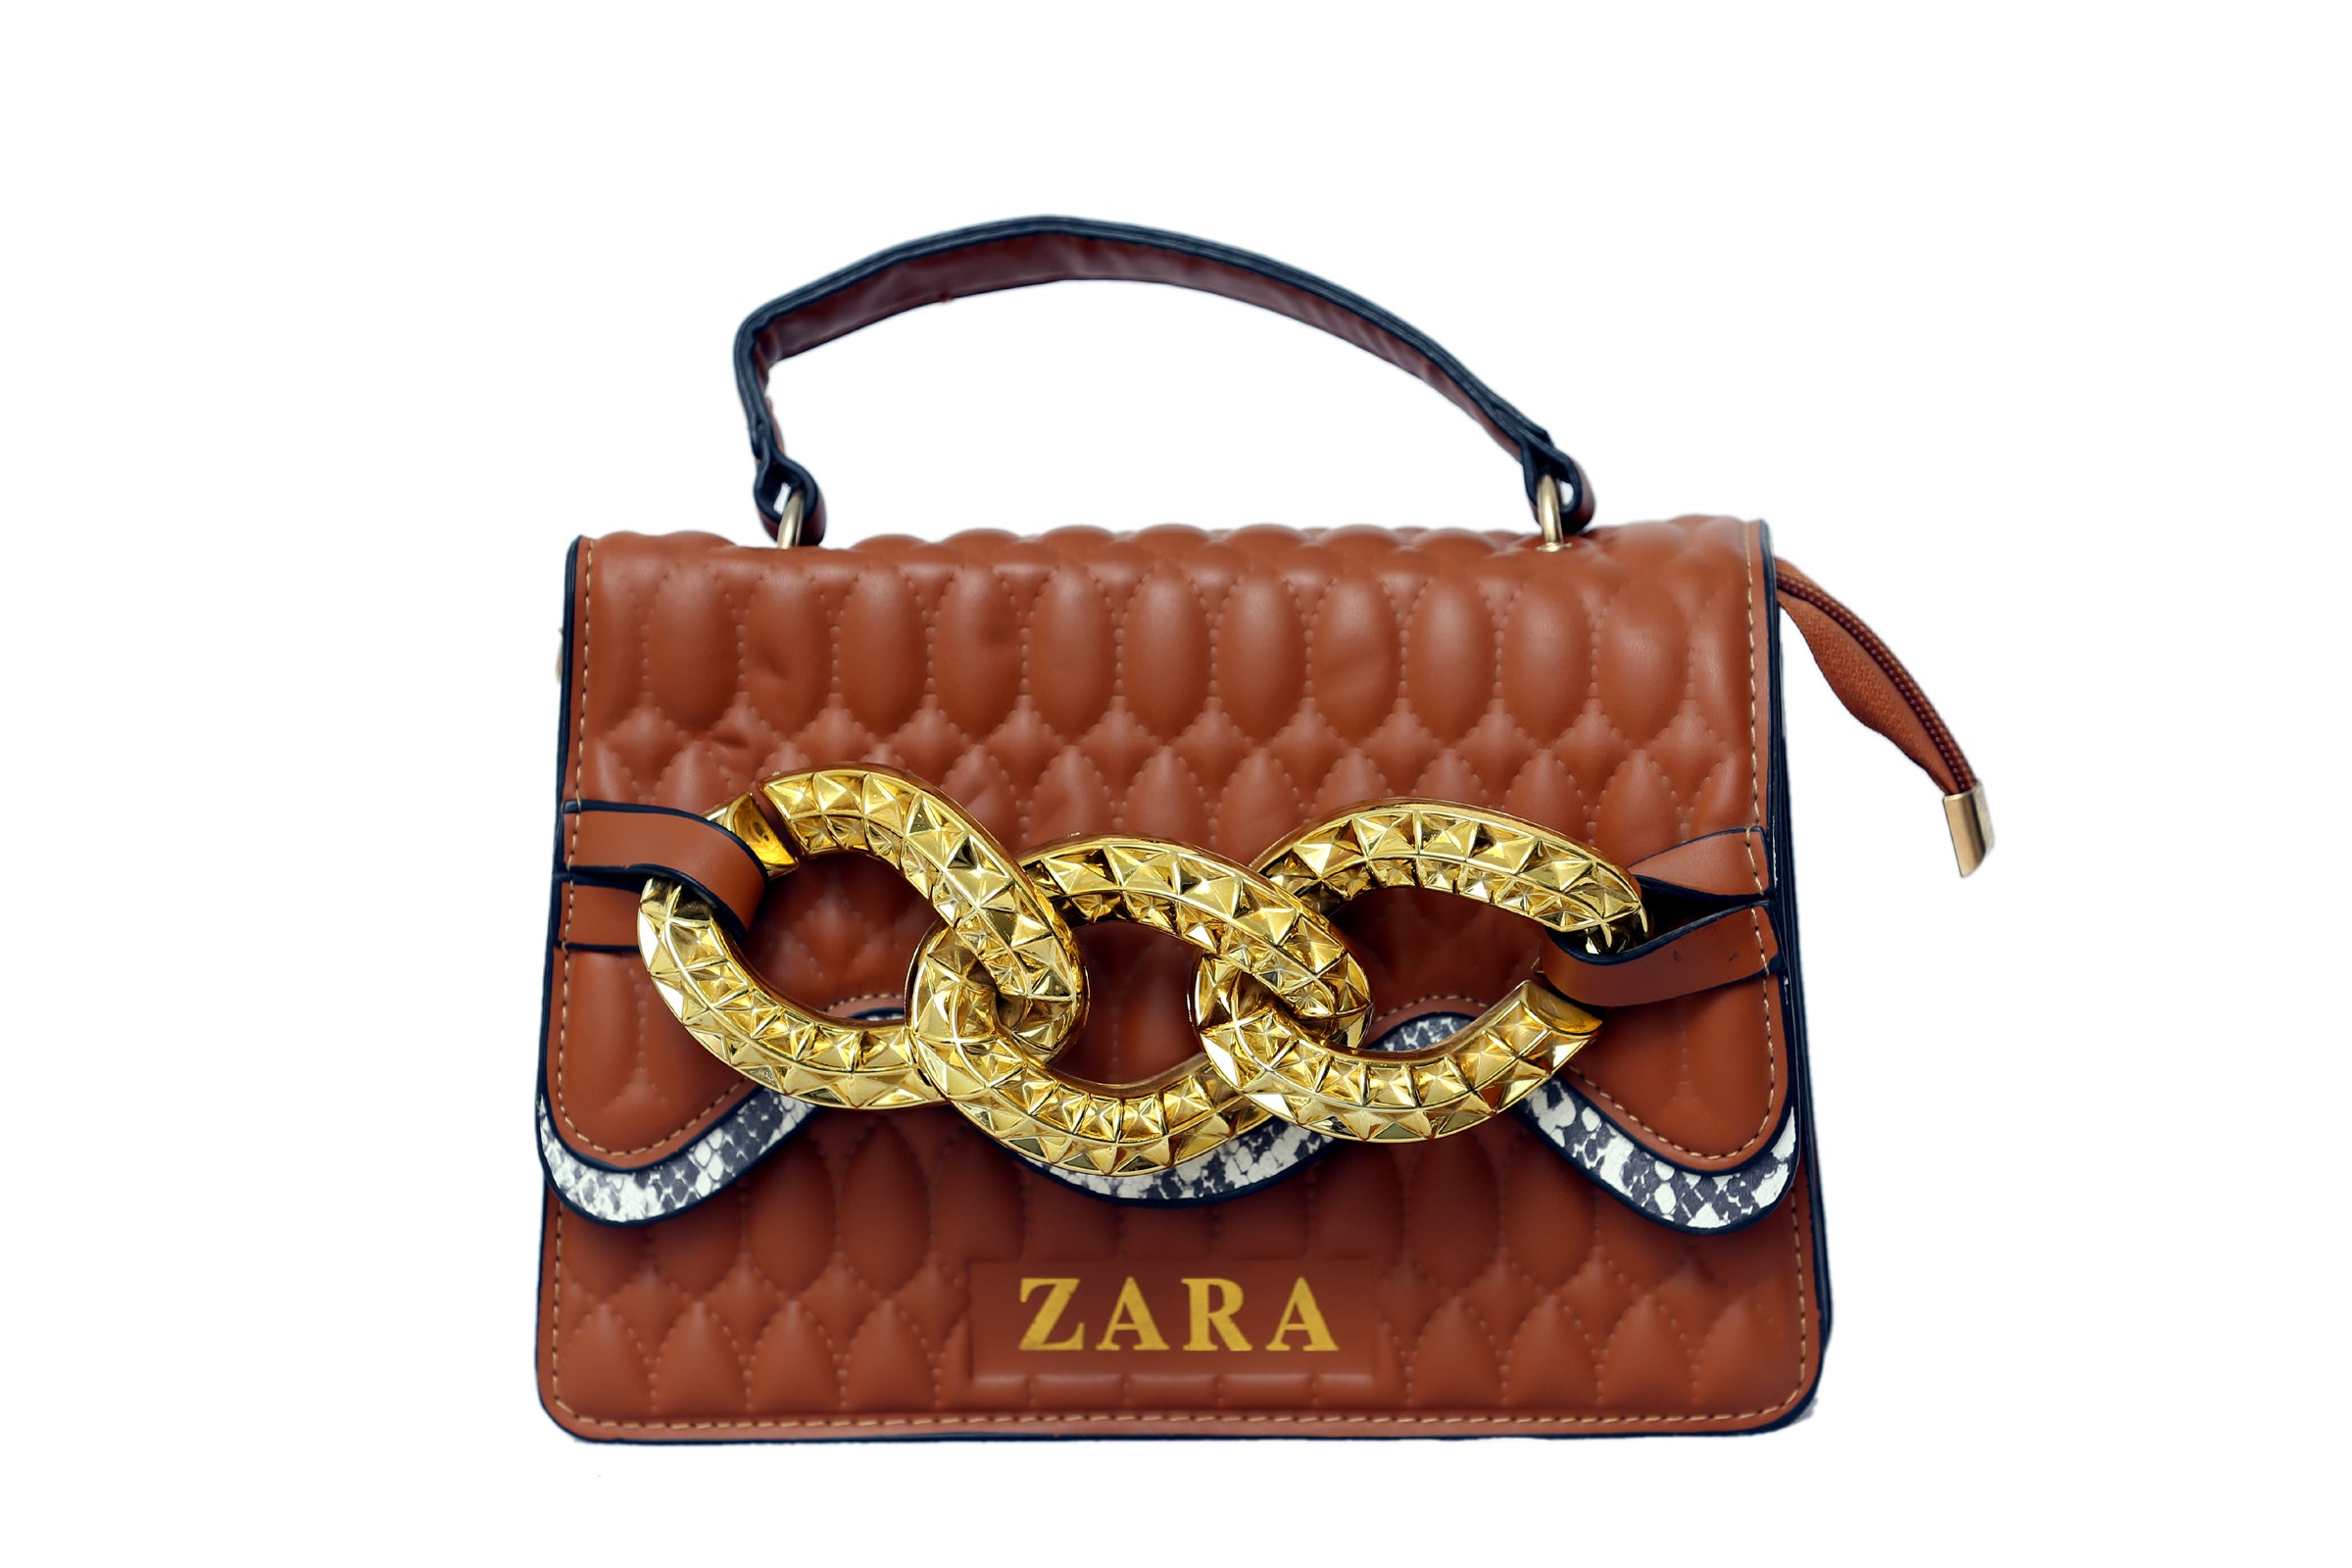 FOXLOVER Women's Multifunctional Leather Satchel Handbag